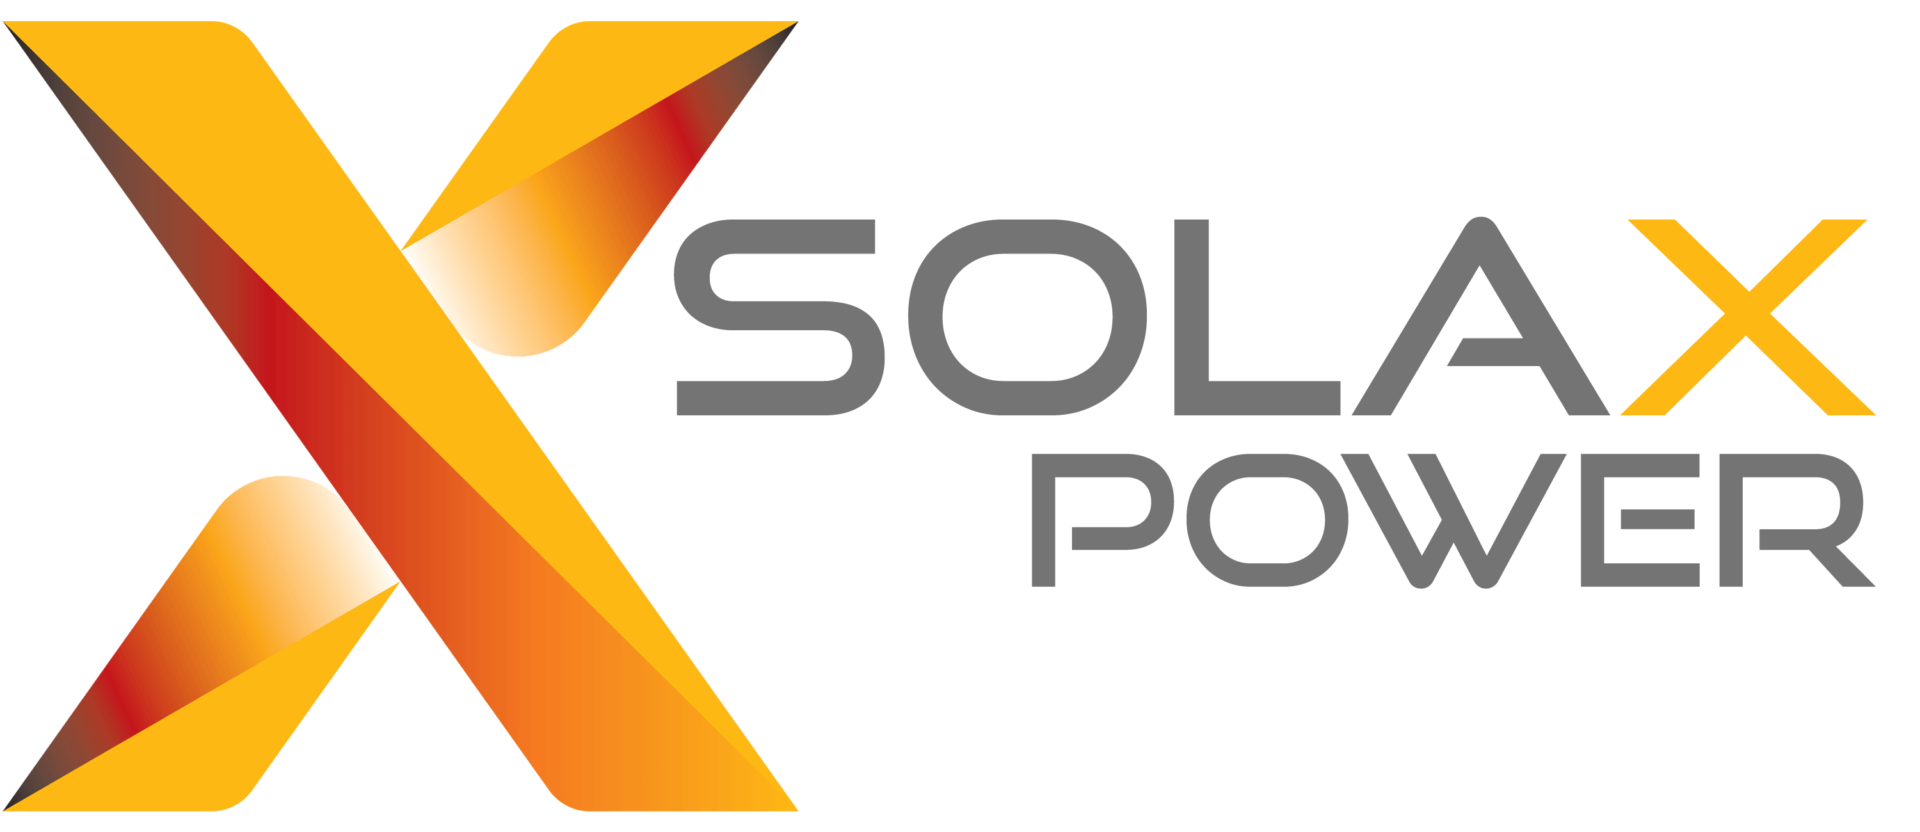 Solax-logo-2